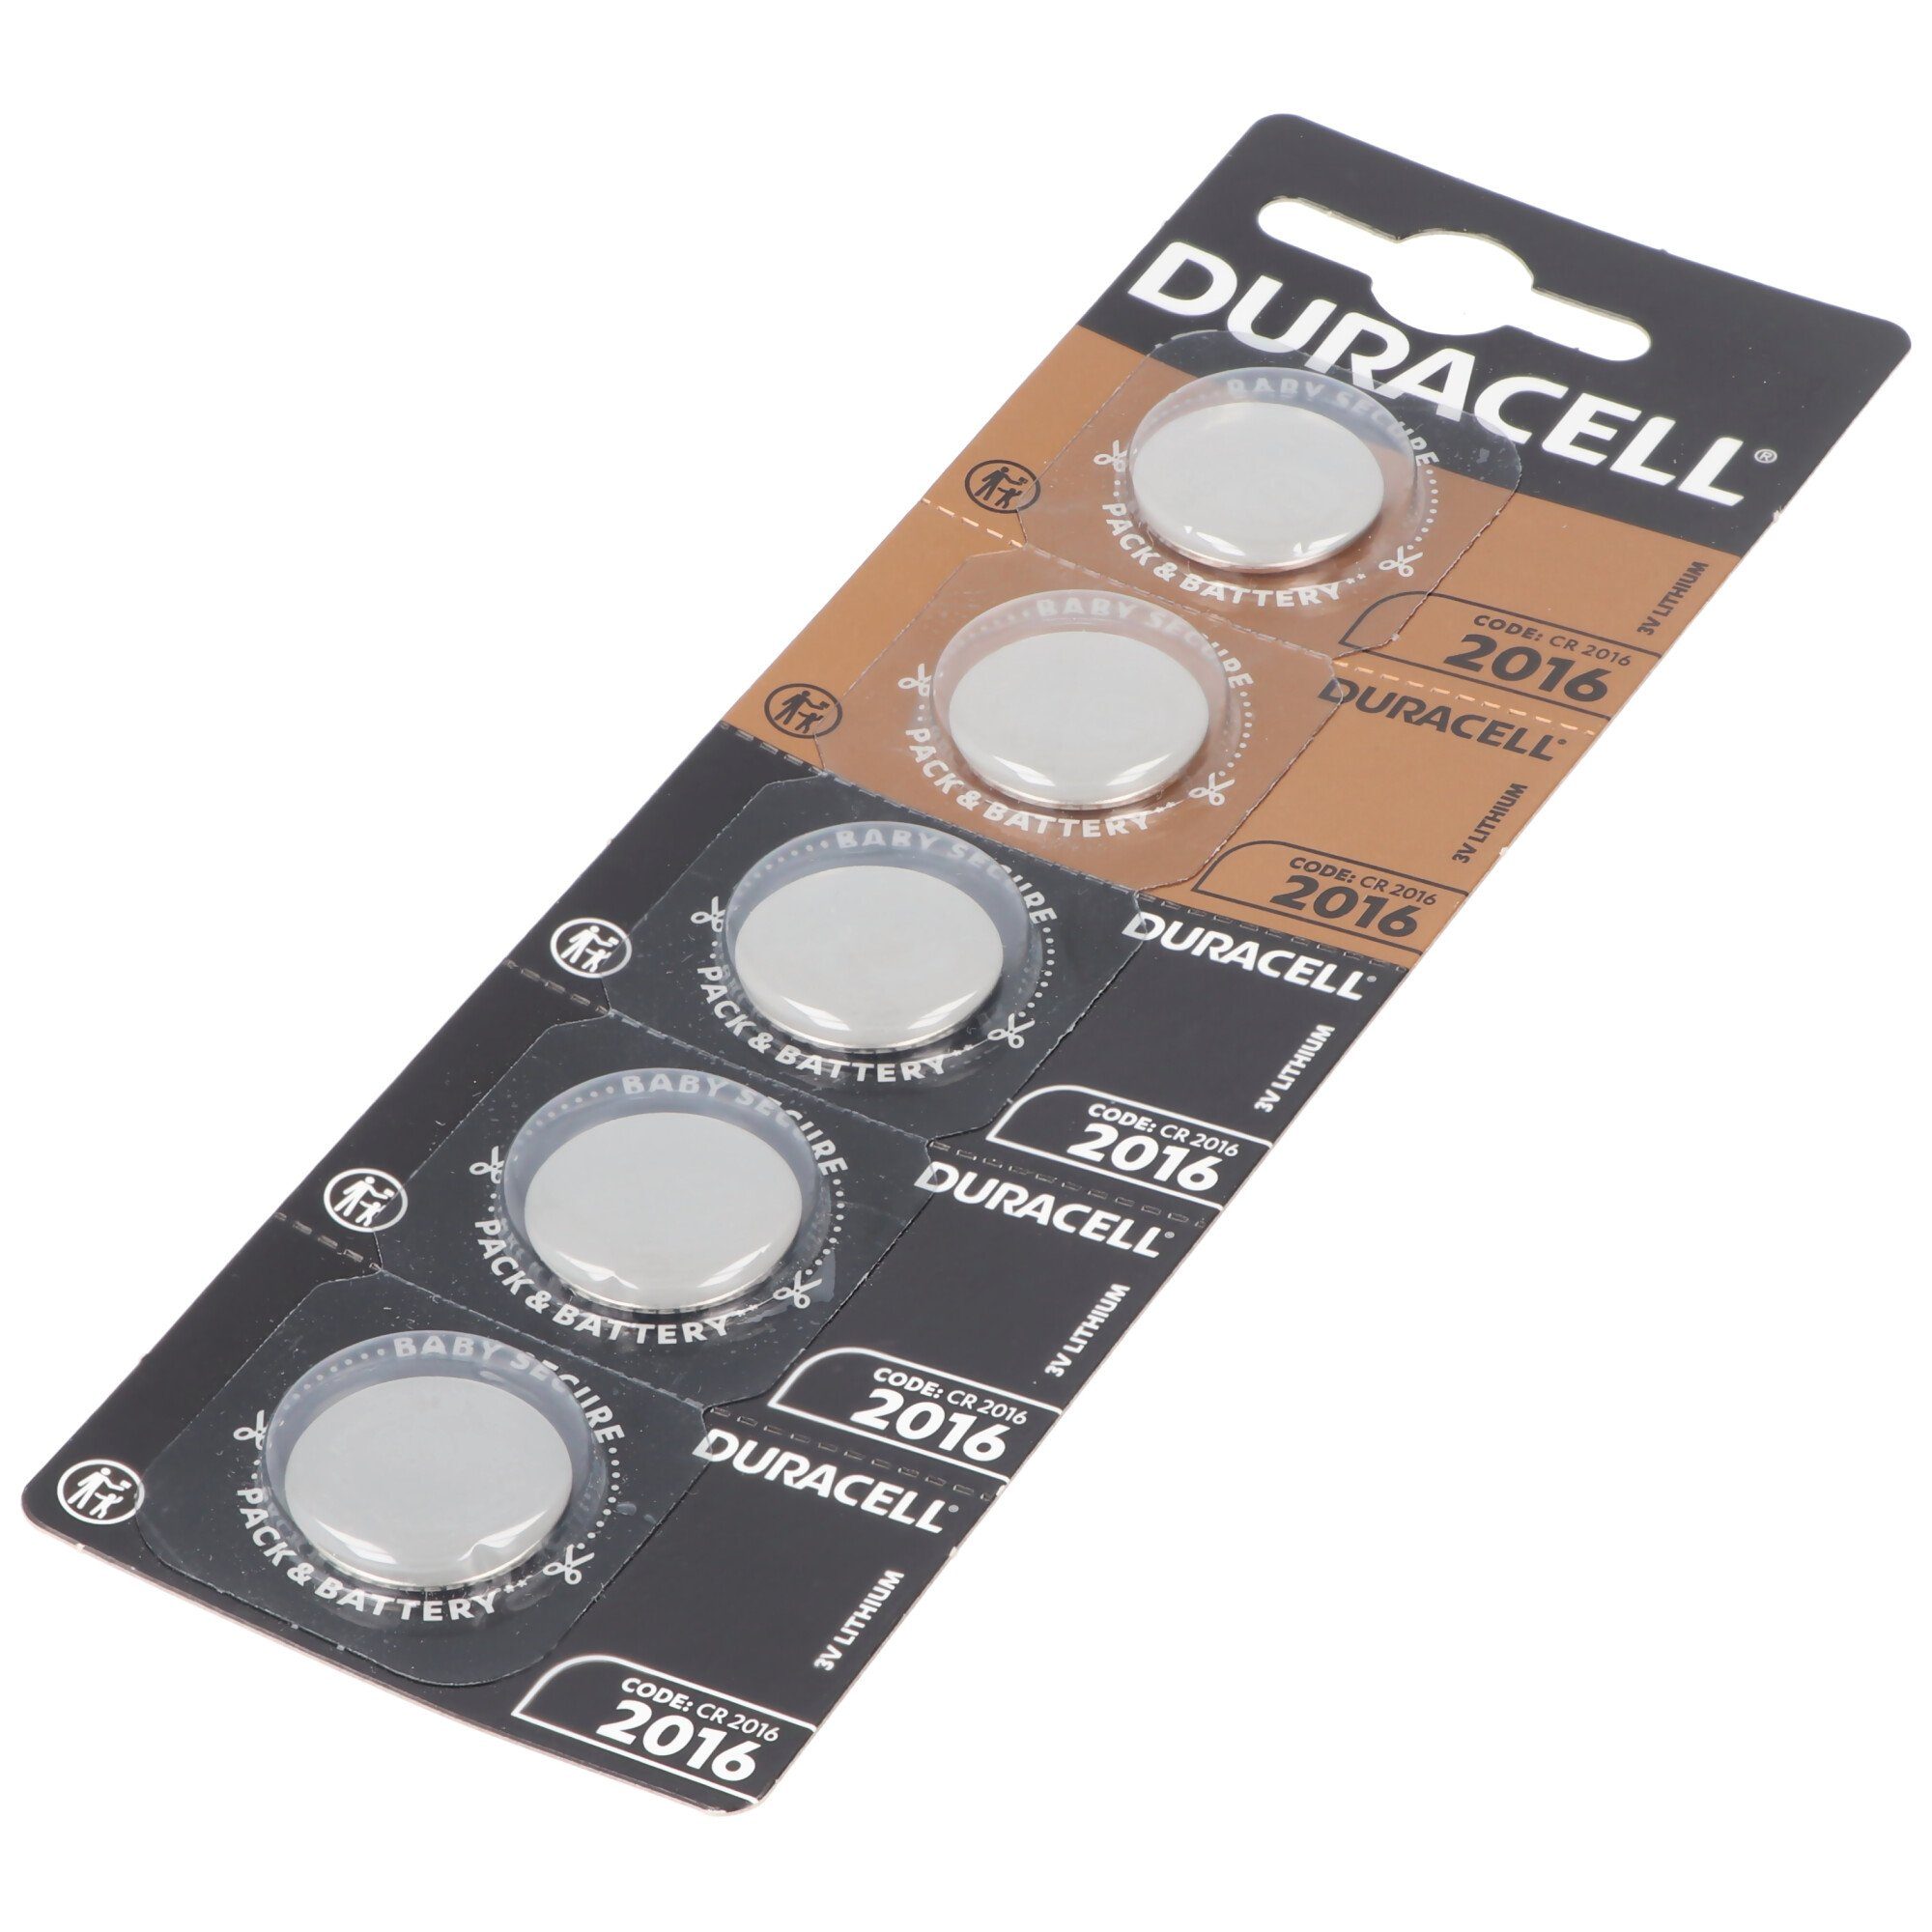 5x Batterie Duracell Duracell Lithium CR2016 Batterie